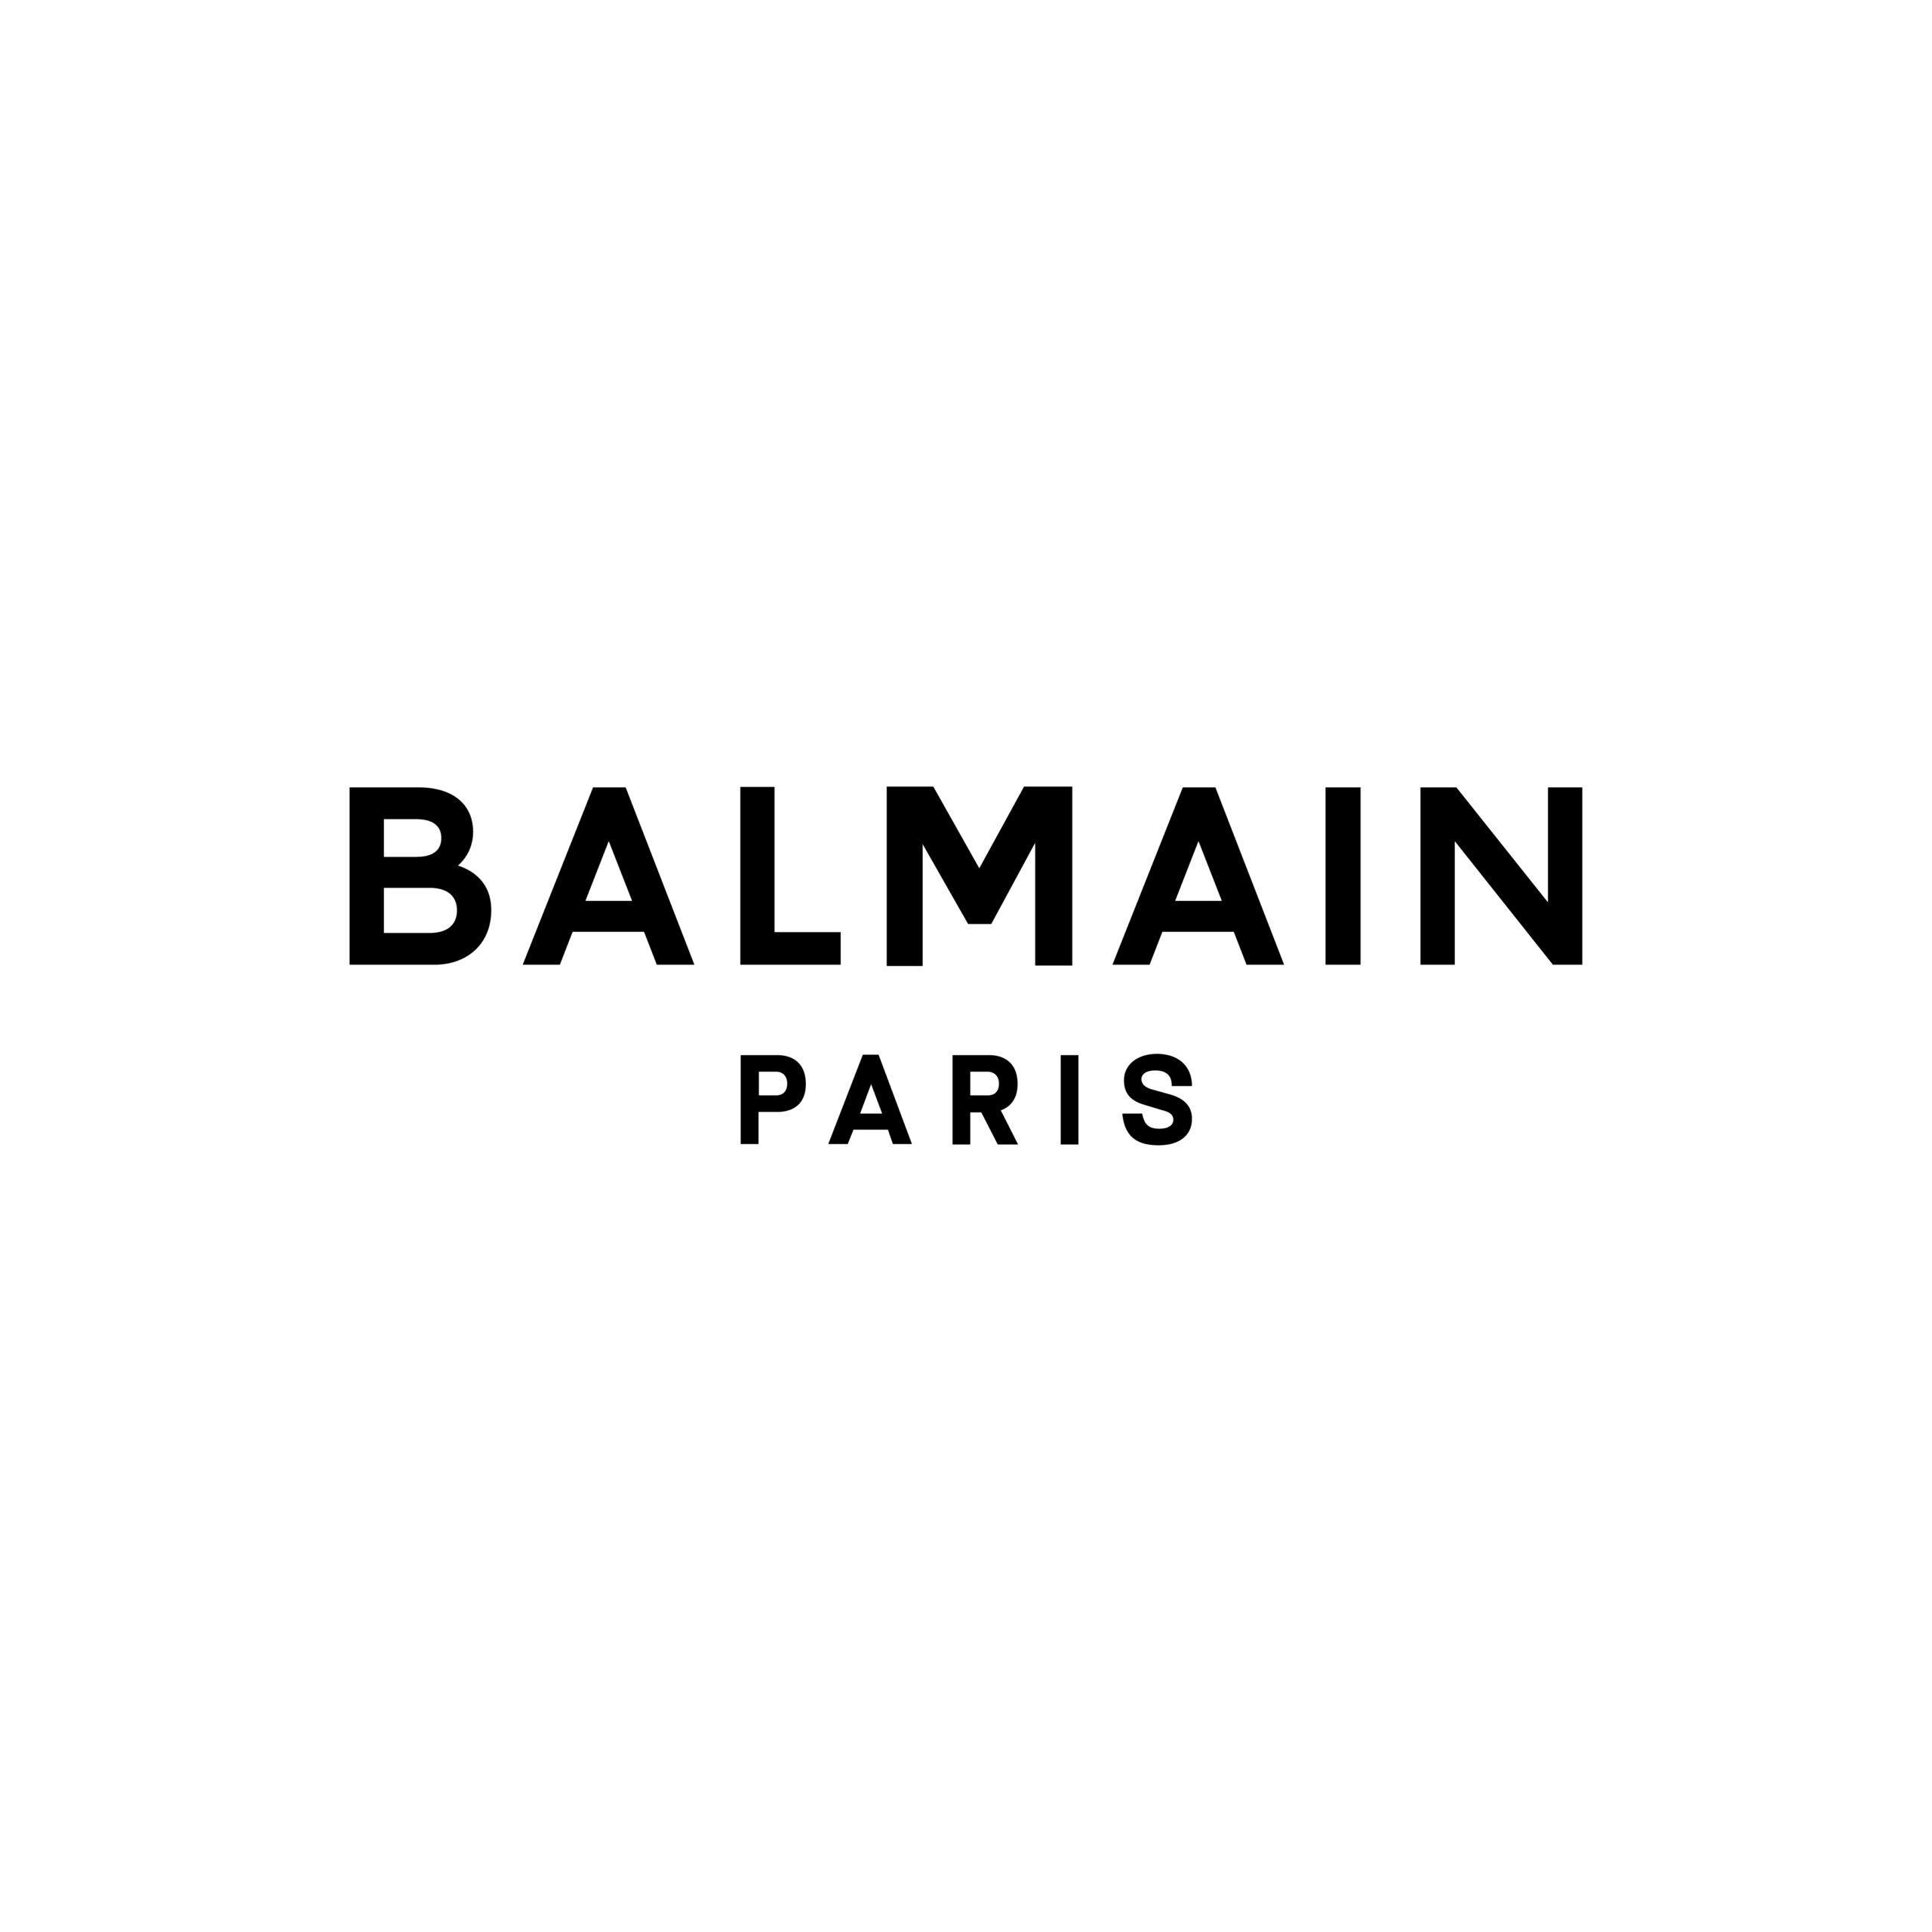 Discover 300 balmain paris logo - Abzlocal.in